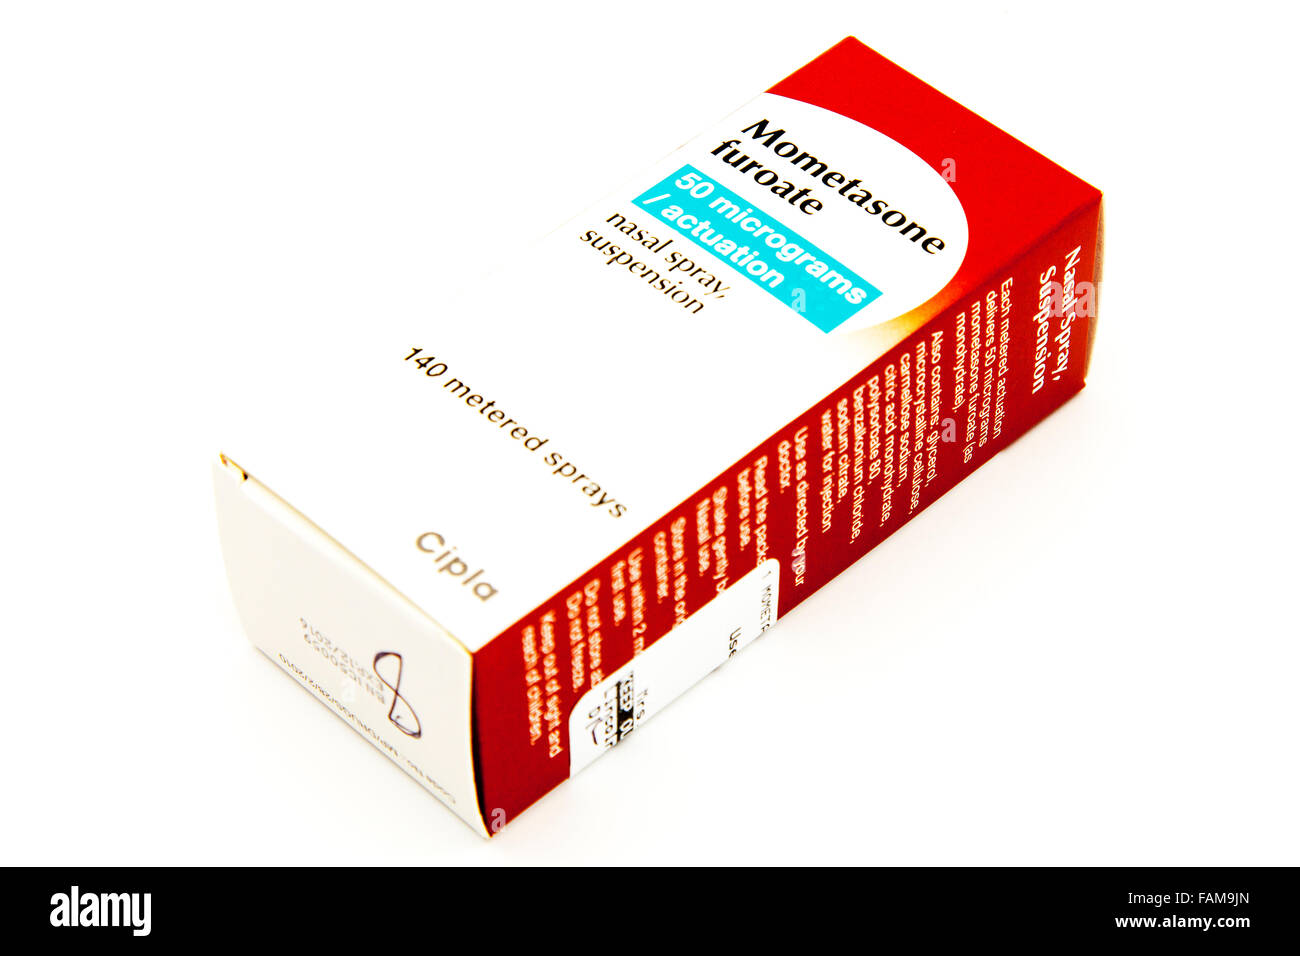 Mometason Furoate Nasenspray Behandlung behandeln Glukokortikoid-Familie von Steroidhormon nasale Allergie Hormone Box medizinische-box Stockfoto